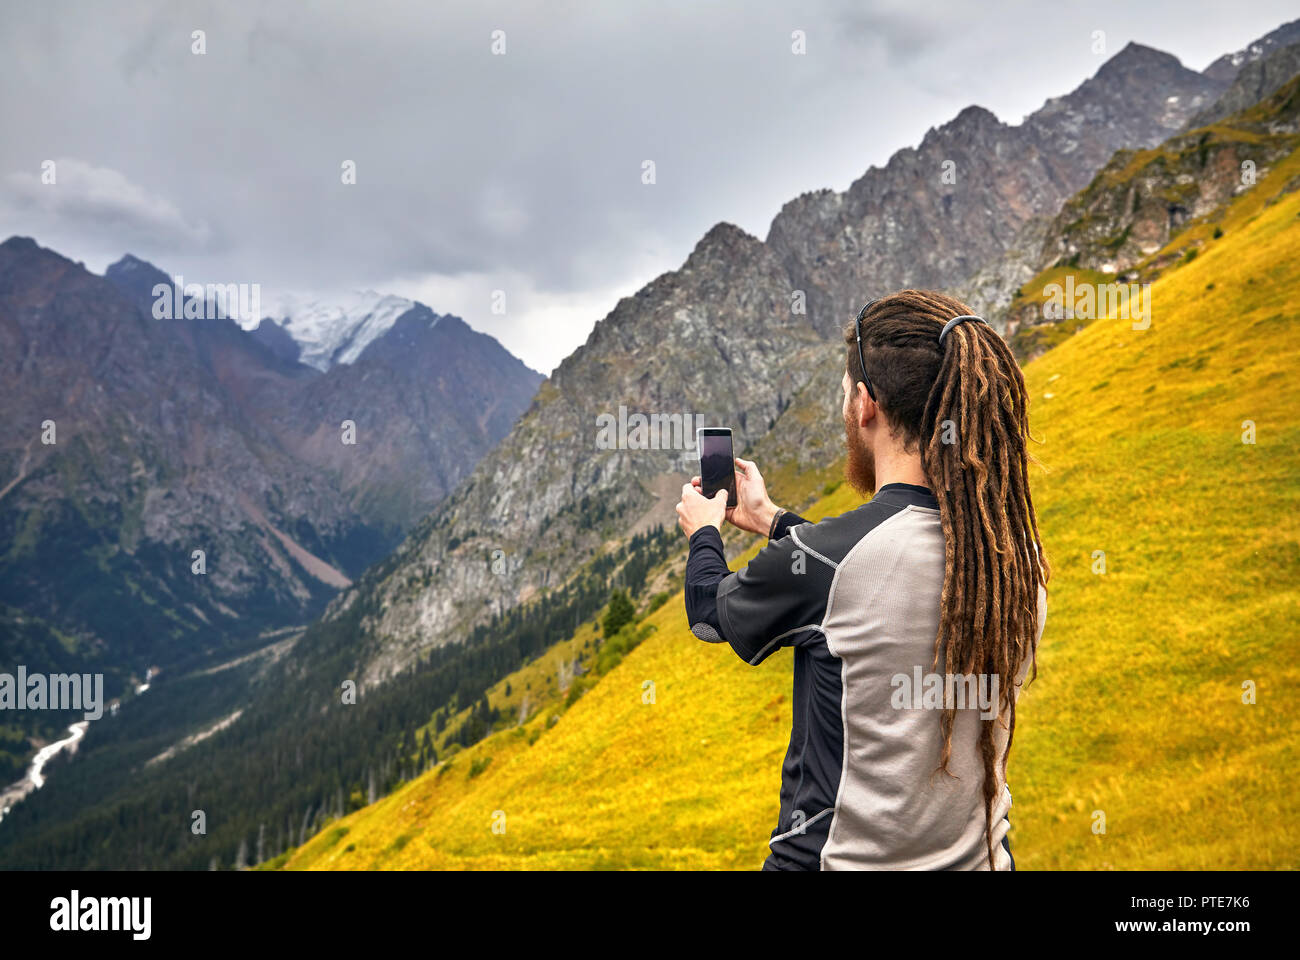 Hombre con dreadlocks tomando fotos con su teléfono en las montañas. Concepto de estilo de vida de viajes de aventura al aire libre vacaciones activas Foto de stock